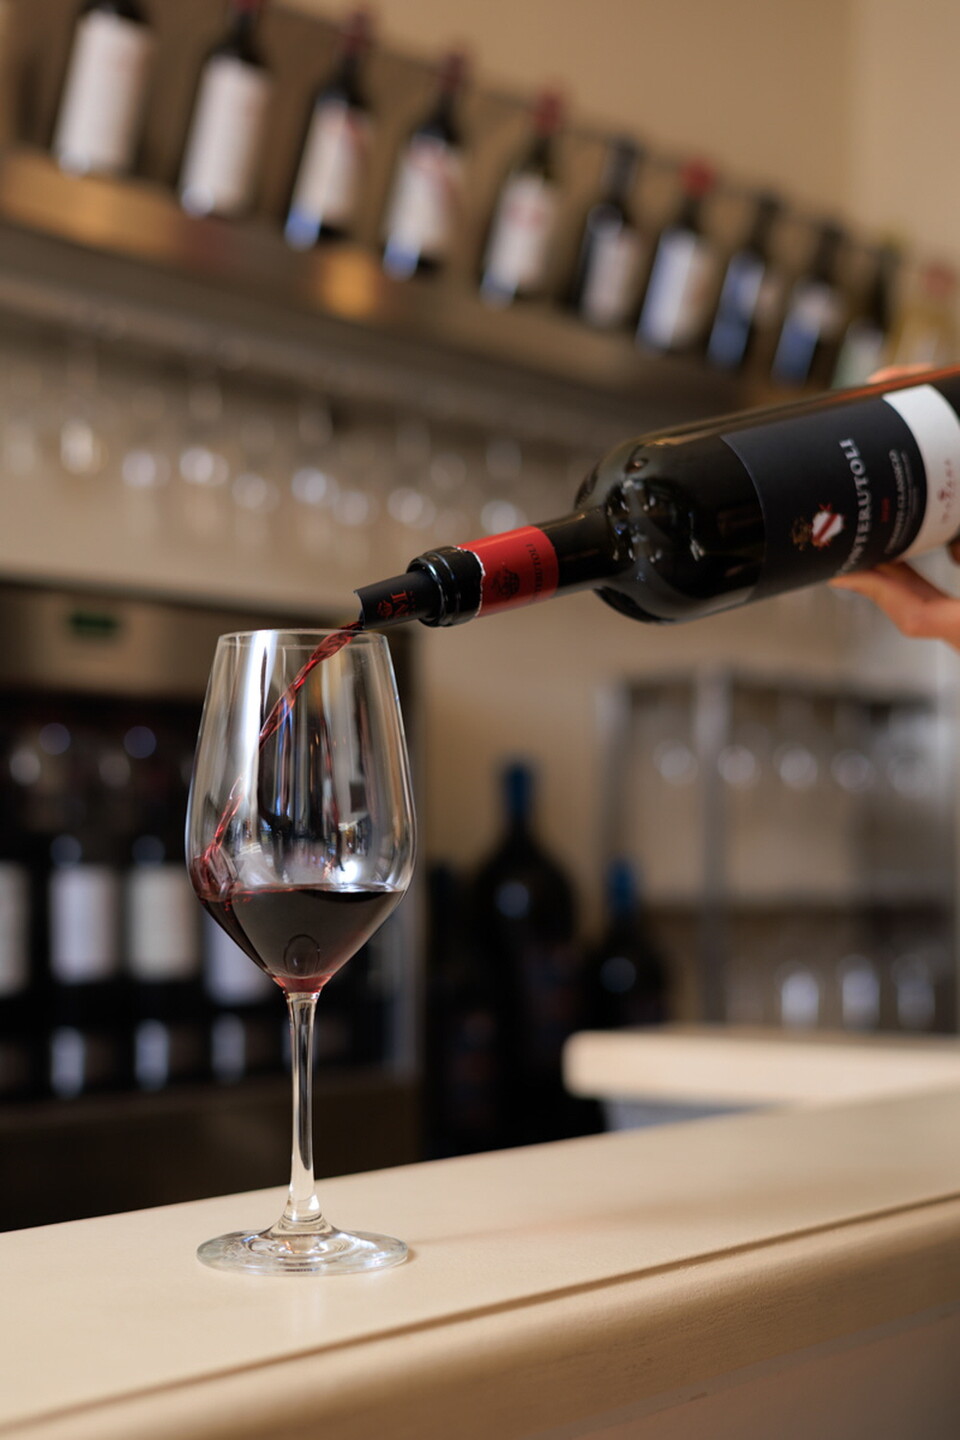 에노테카에서는 한 두 잔 정도의 간단한 와인 시음을 즐긴 후 와인을 구매할 수도 있다 